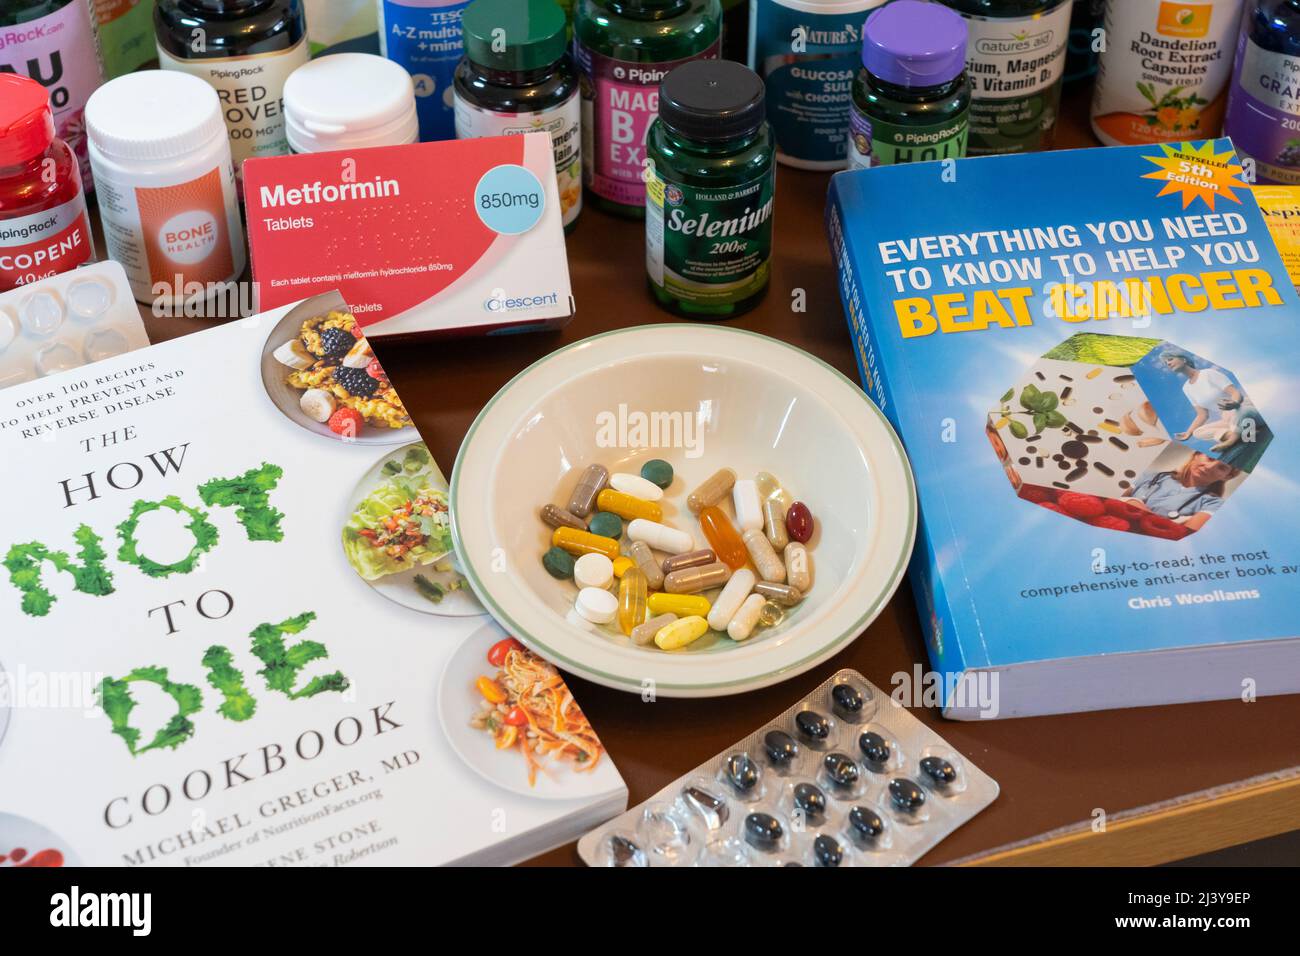 Una selección de los muchos medicamentos, vitaminas y suplementos alimenticios tomados por alguien que intenta recuperarse del cáncer, con libros sobre el cáncer que sobrevive. REINO UNIDO Foto de stock